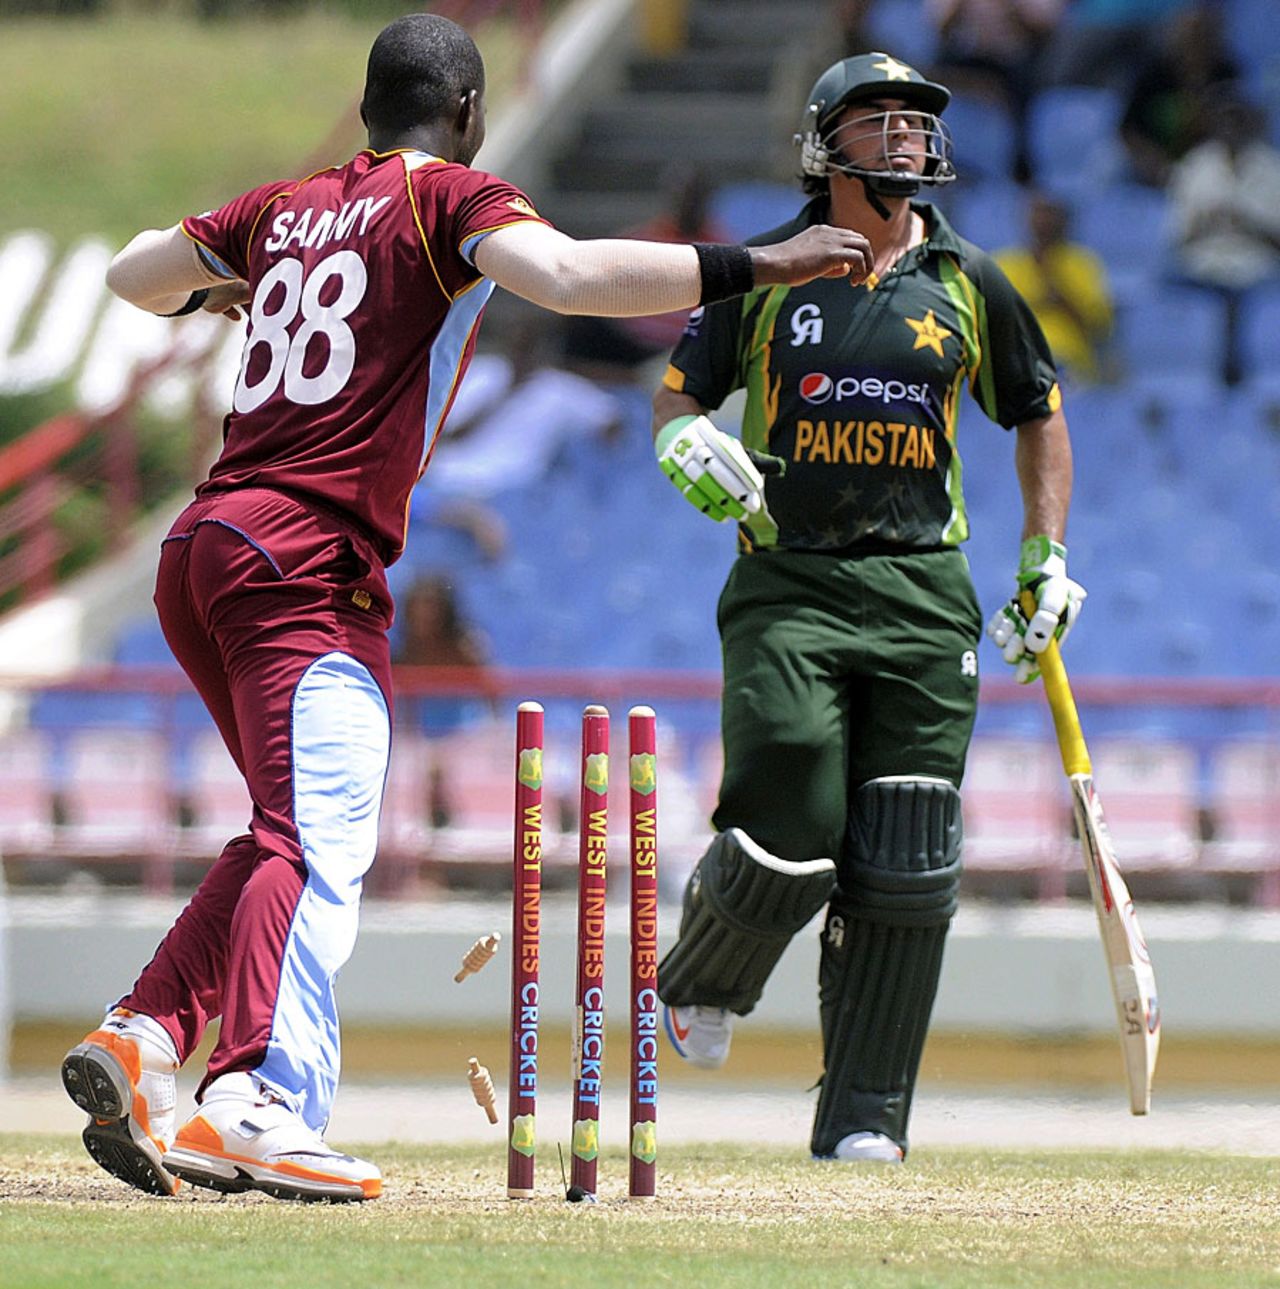 A direct hit sends back Nasir Jamshed, West Indies v Pakistan, 5th ODI, St Lucia, July 24, 2013